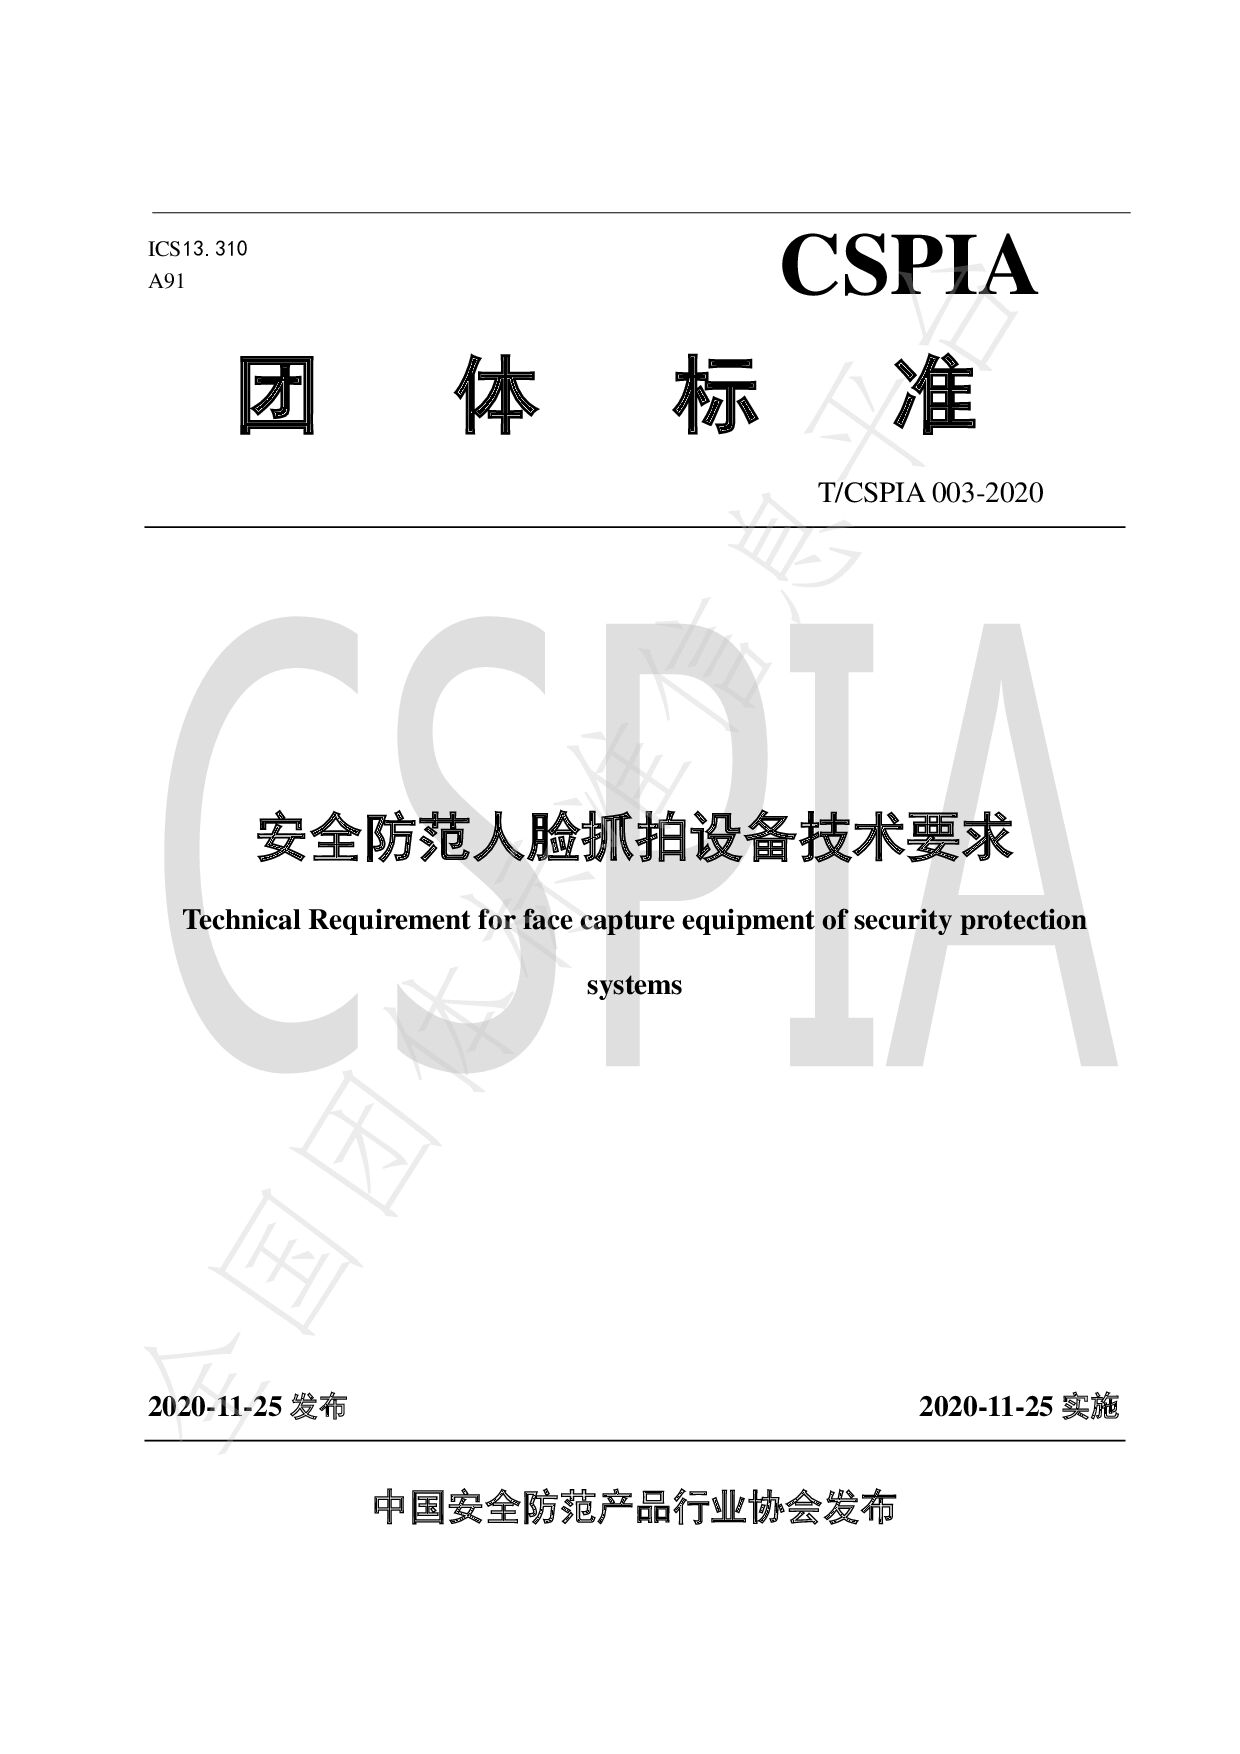 T/CSPIA 003-2020